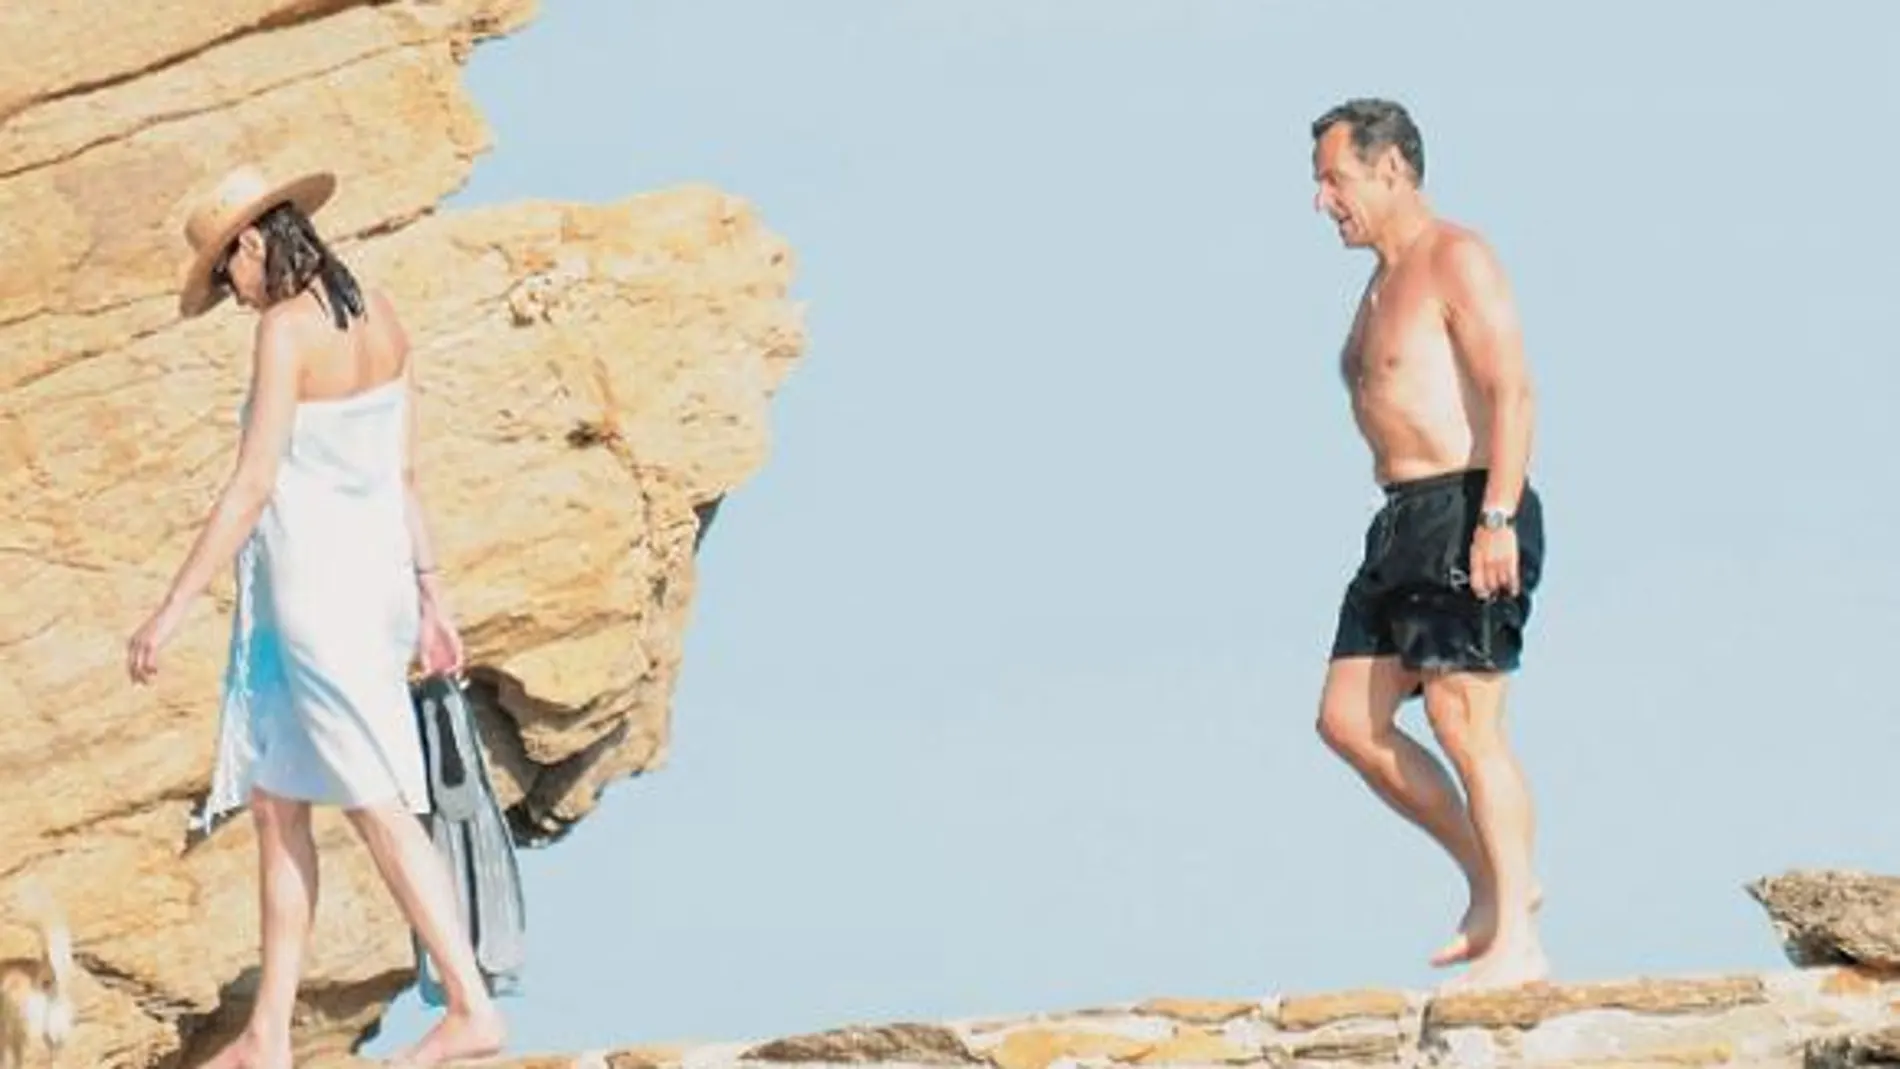 El matrimonio Sarkozy-Bruni disfrutó de las profundidades marinas del Mediterráneo con unas aletas de natación